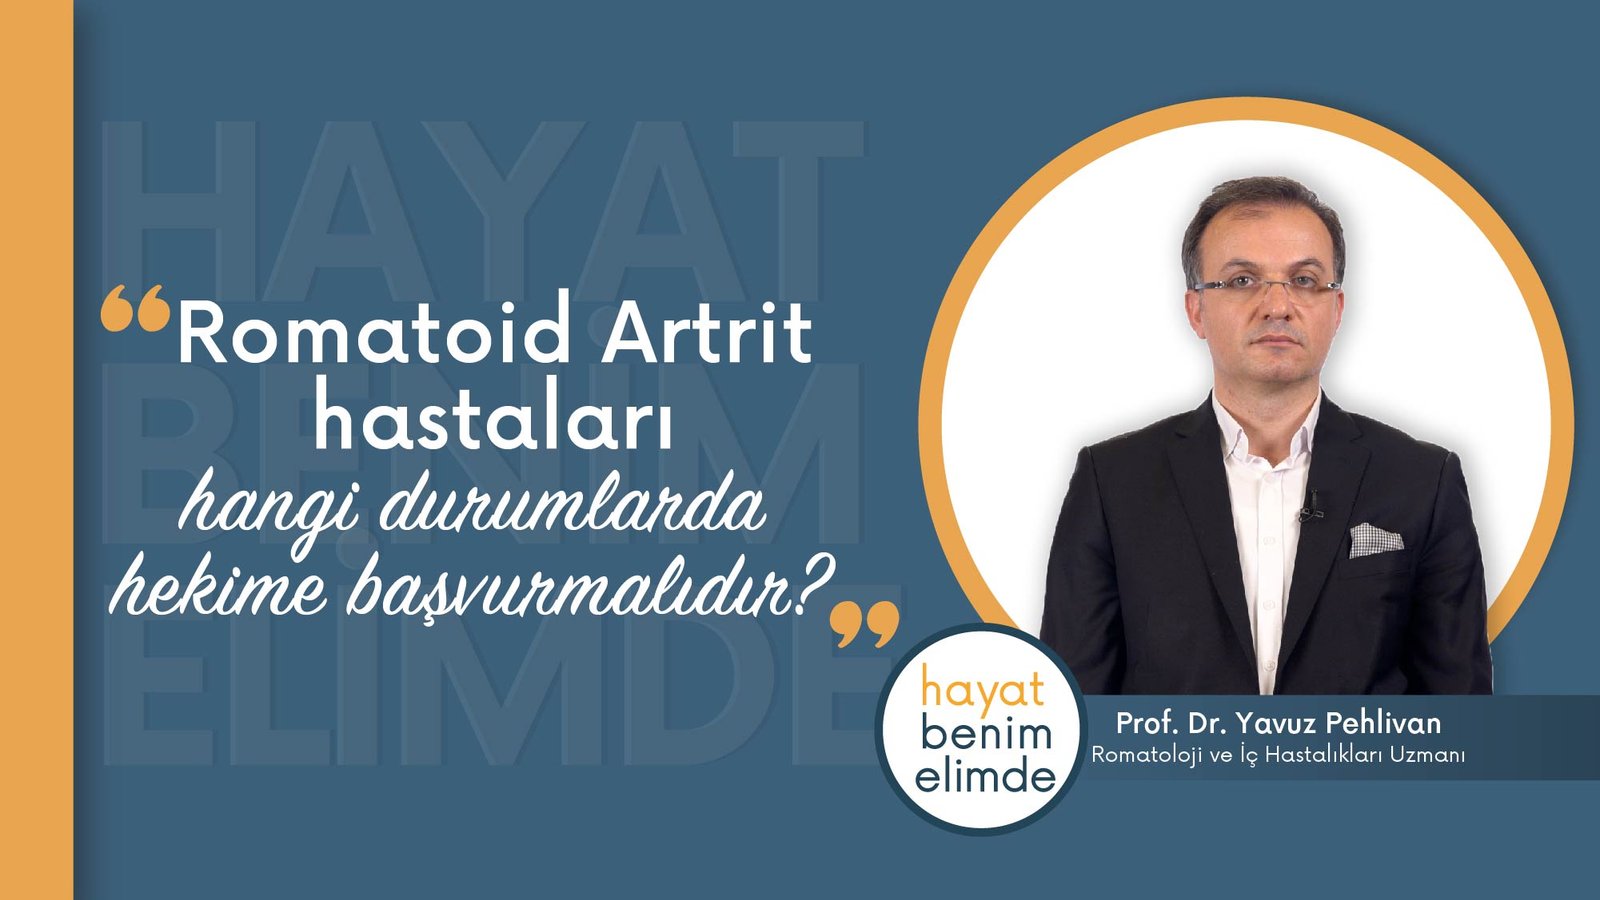 Romatoid Artrit Hastaları Hangi Durumlarda Hekime Başvurmalıdır? | Prof. Dr. Yavuz Pehlivan